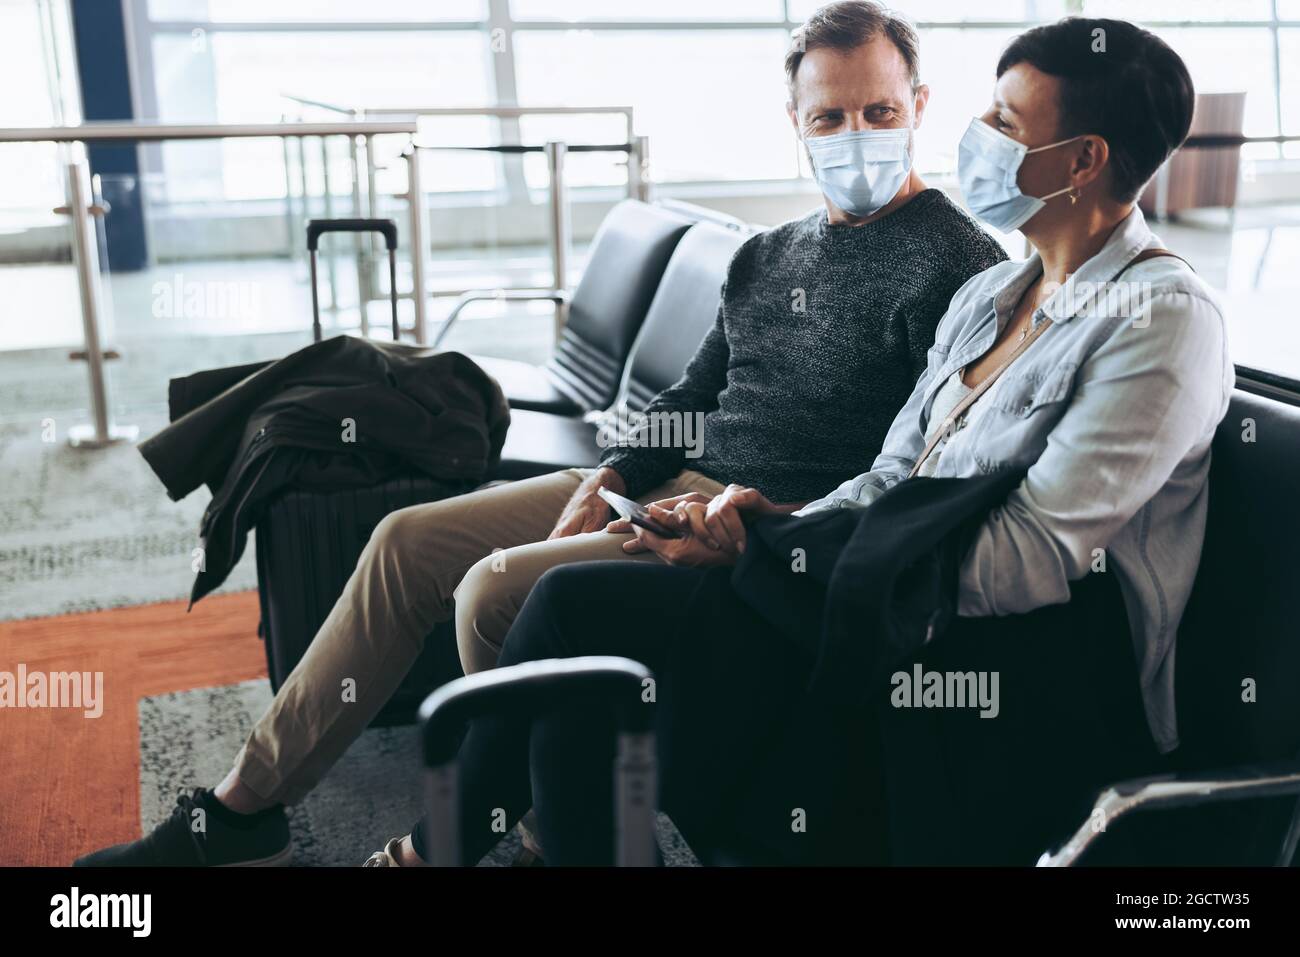 Ein Paar mit Gesichtsmasken sitzt am Flughafen. Mann und Frau, die während einer Pandemie des Covid-19 unterwegs waren. Stockfoto